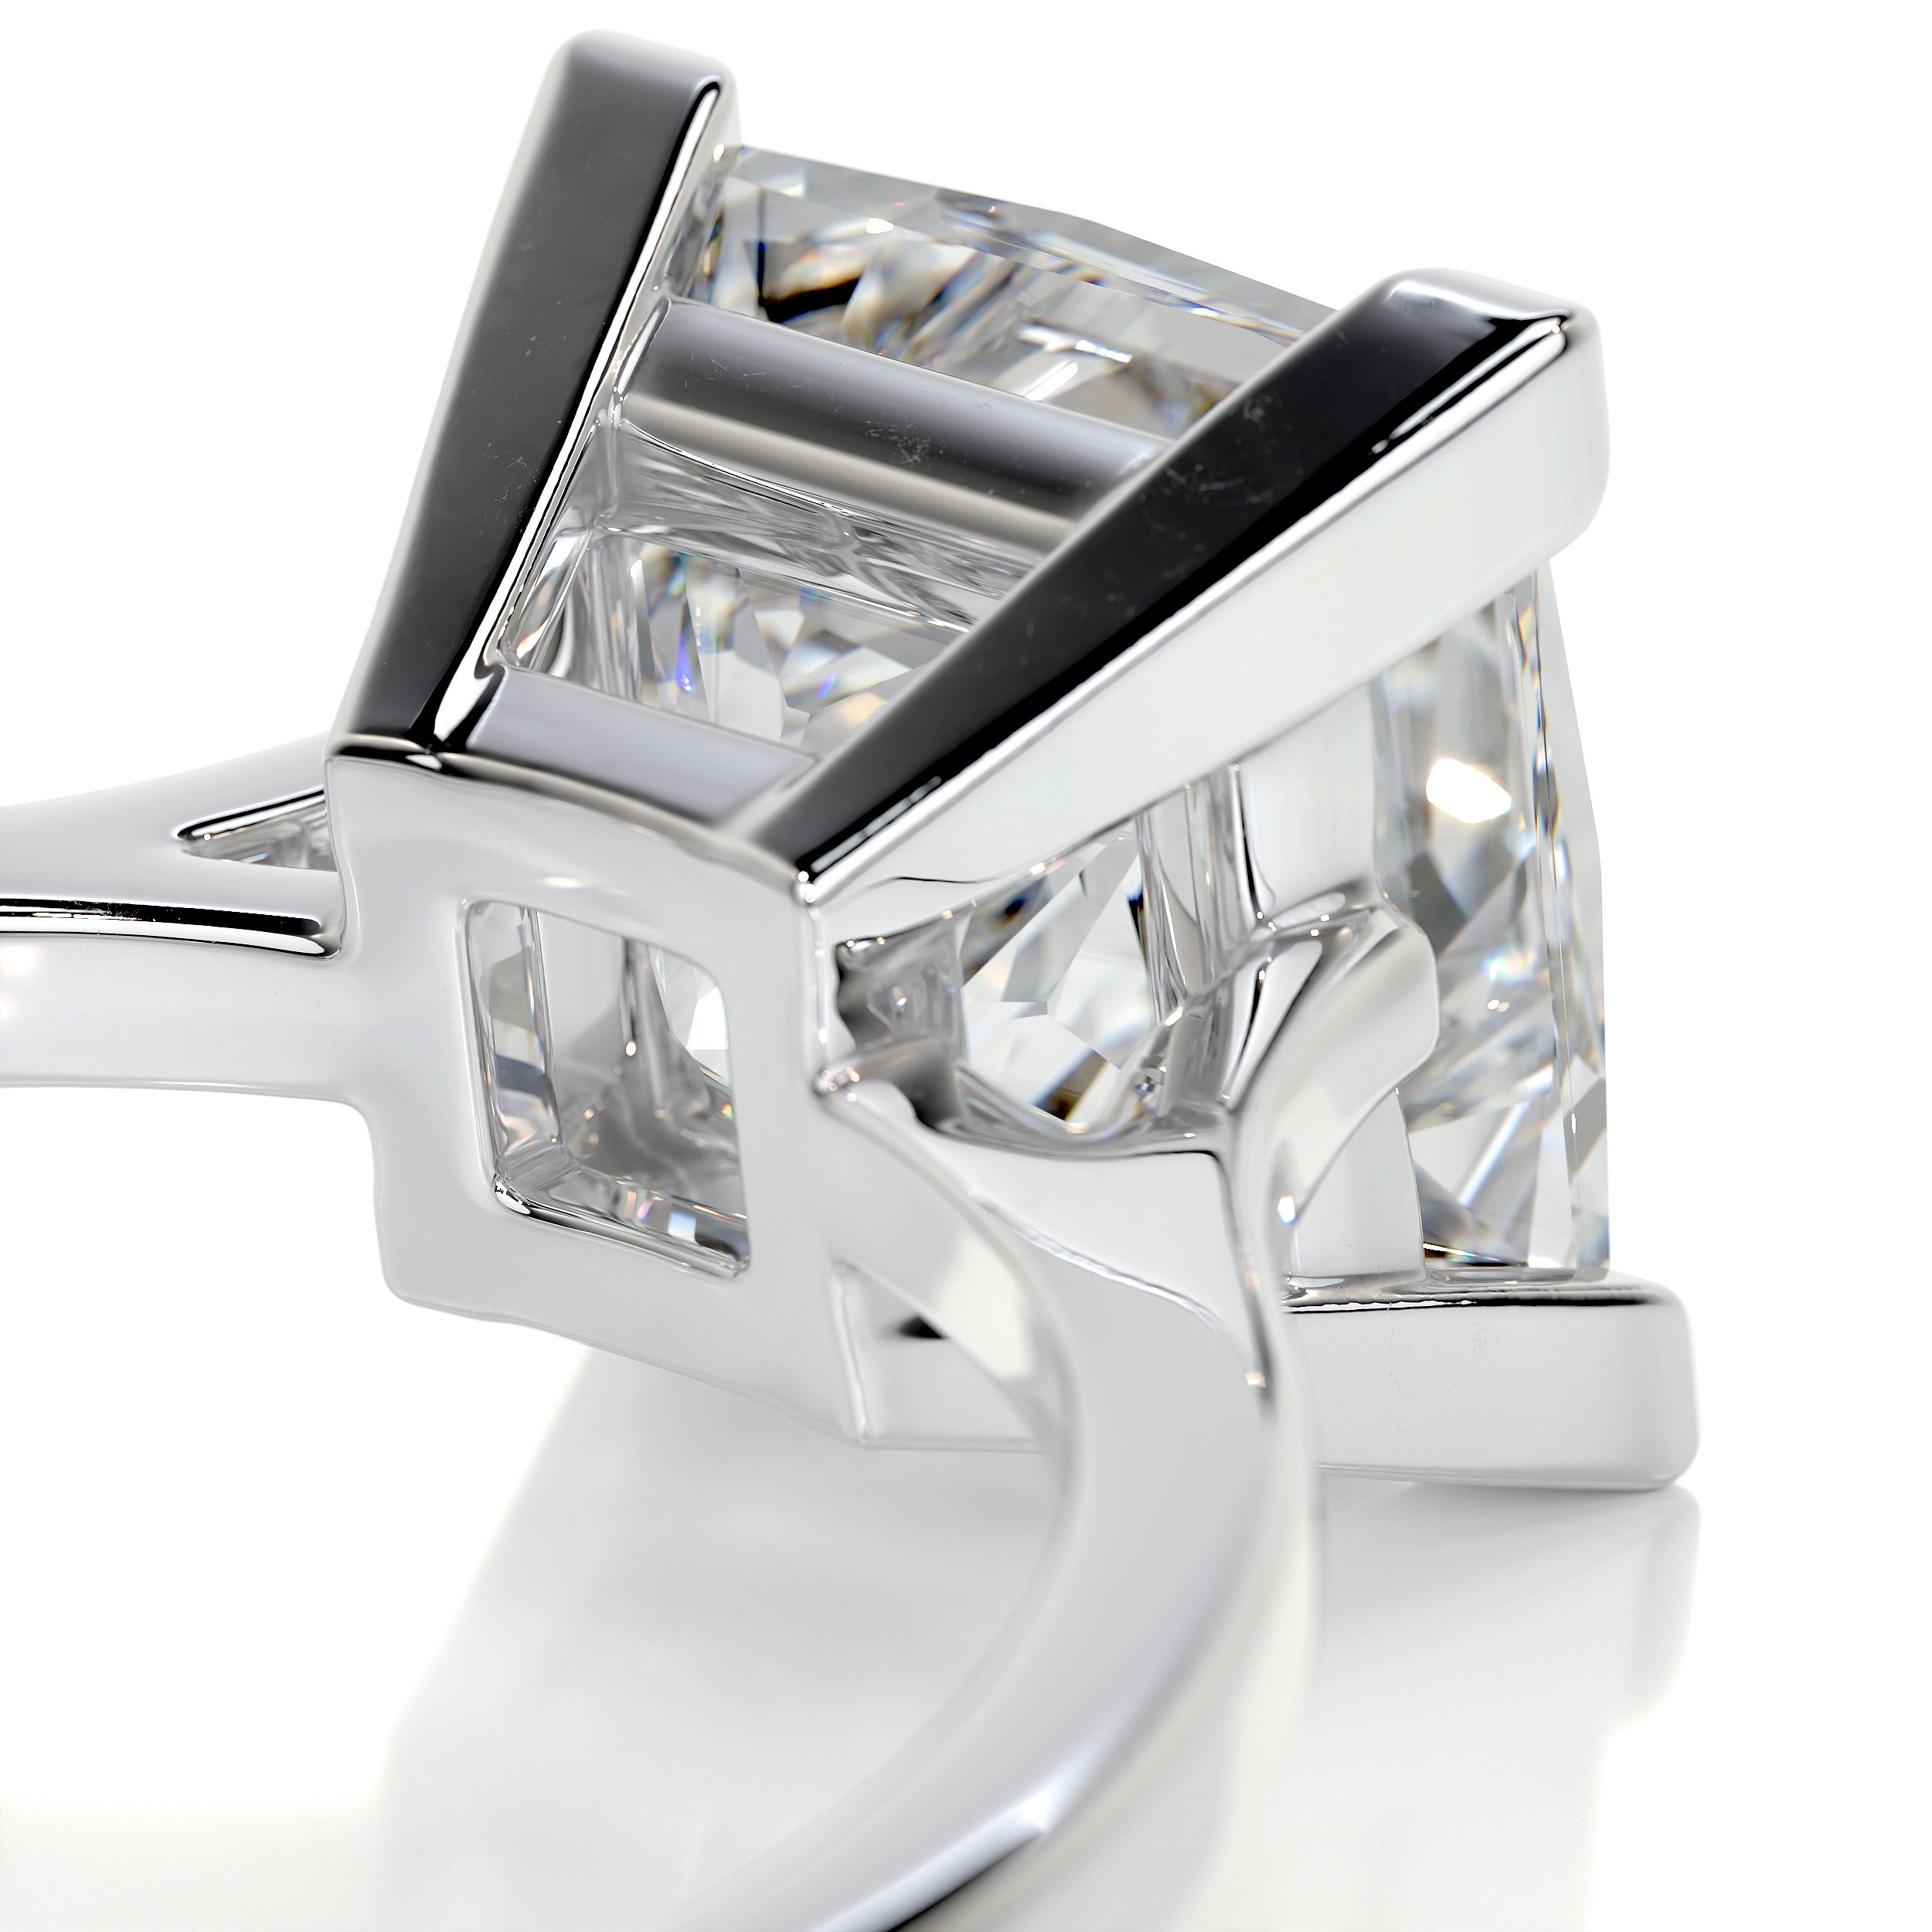 Ella Diamond Engagement Ring -Platinum